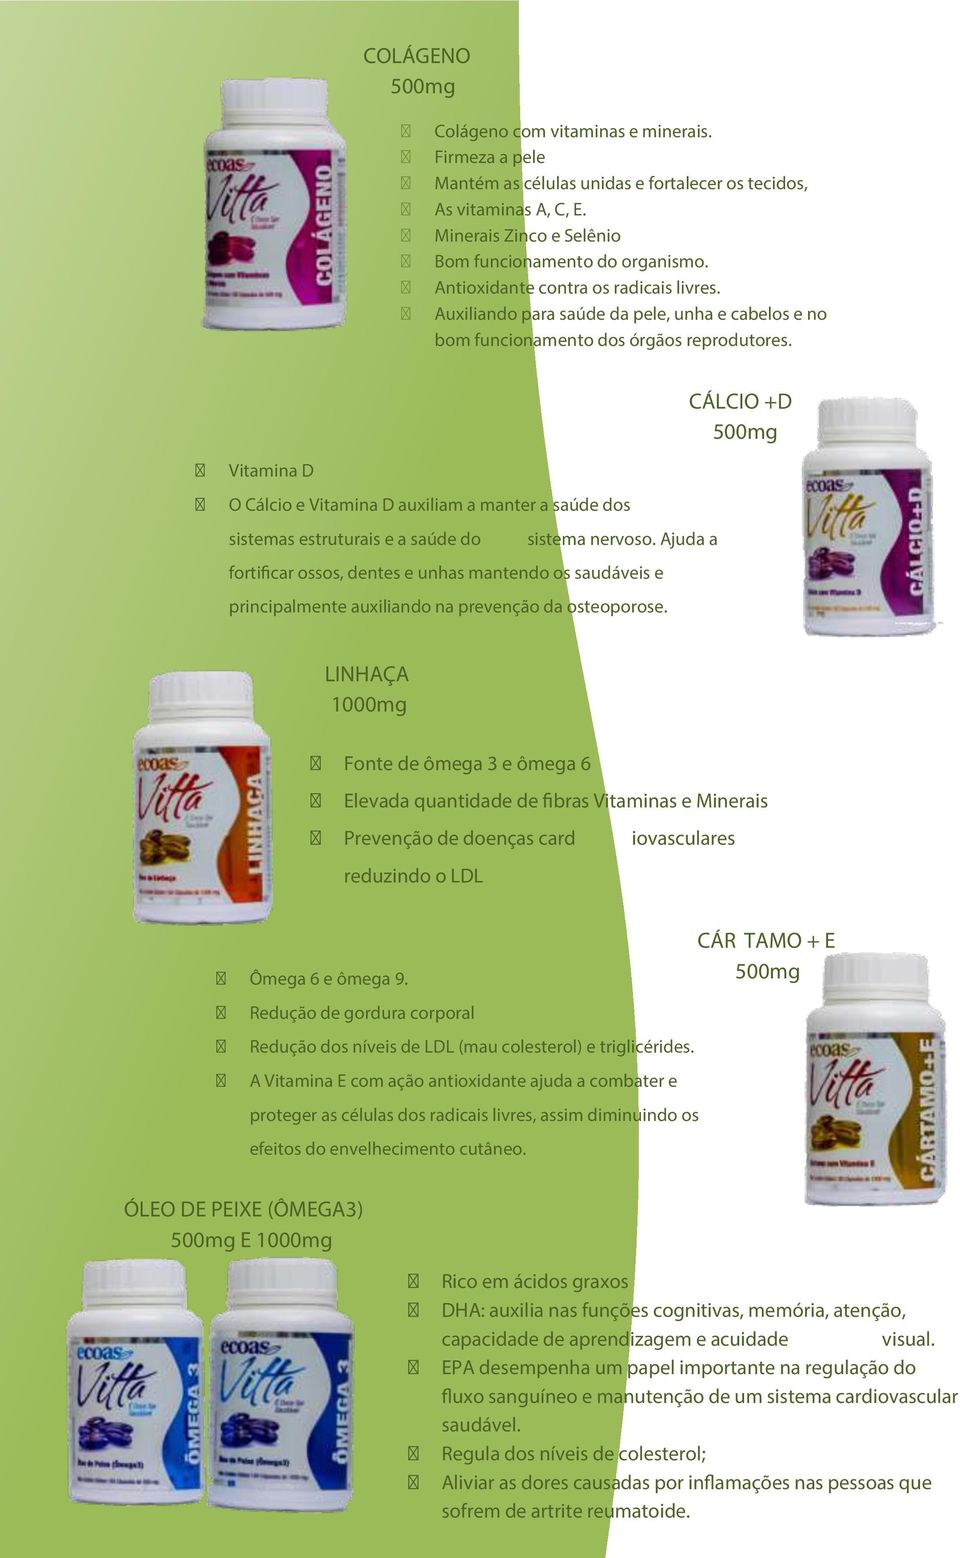 CÁLCIO +D 500mg Vitamina D O Cálcio e Vitamina D auxiliam a manter a saúde dos sistemas estruturais e a saúde do sistema nervoso.